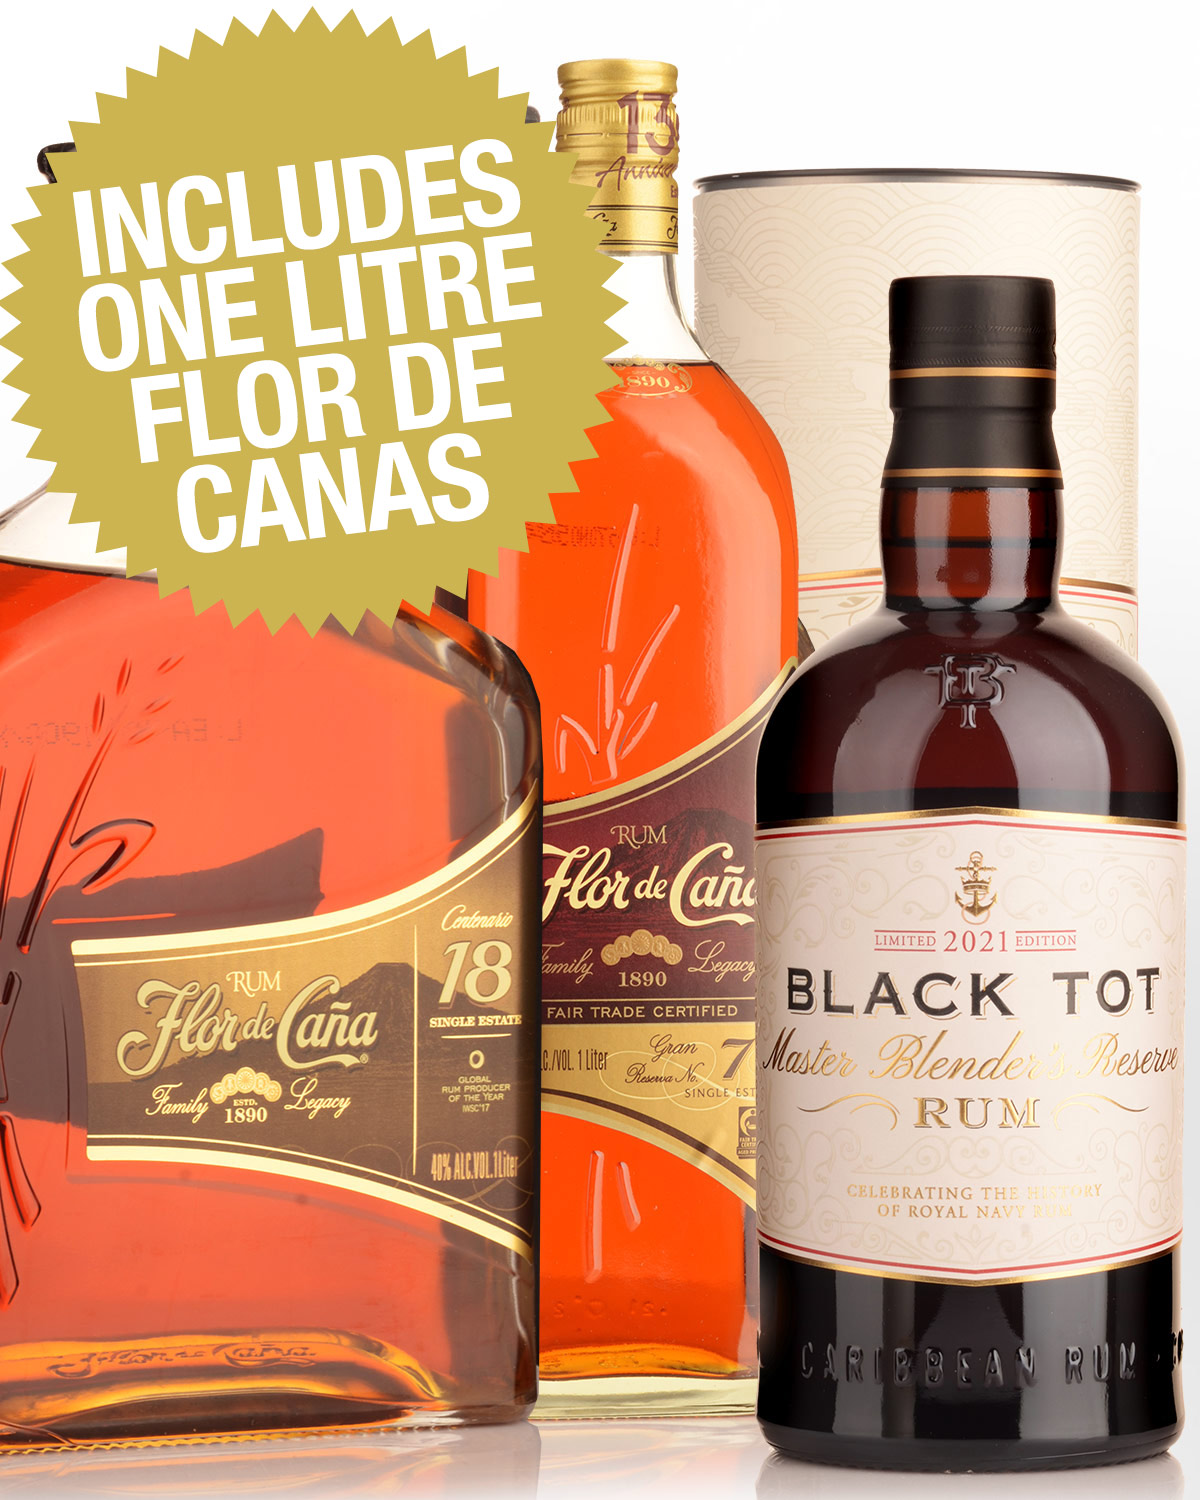 Black Tot Master Blender's Reserve & Flor de Cana Grand Reserve 7 Year